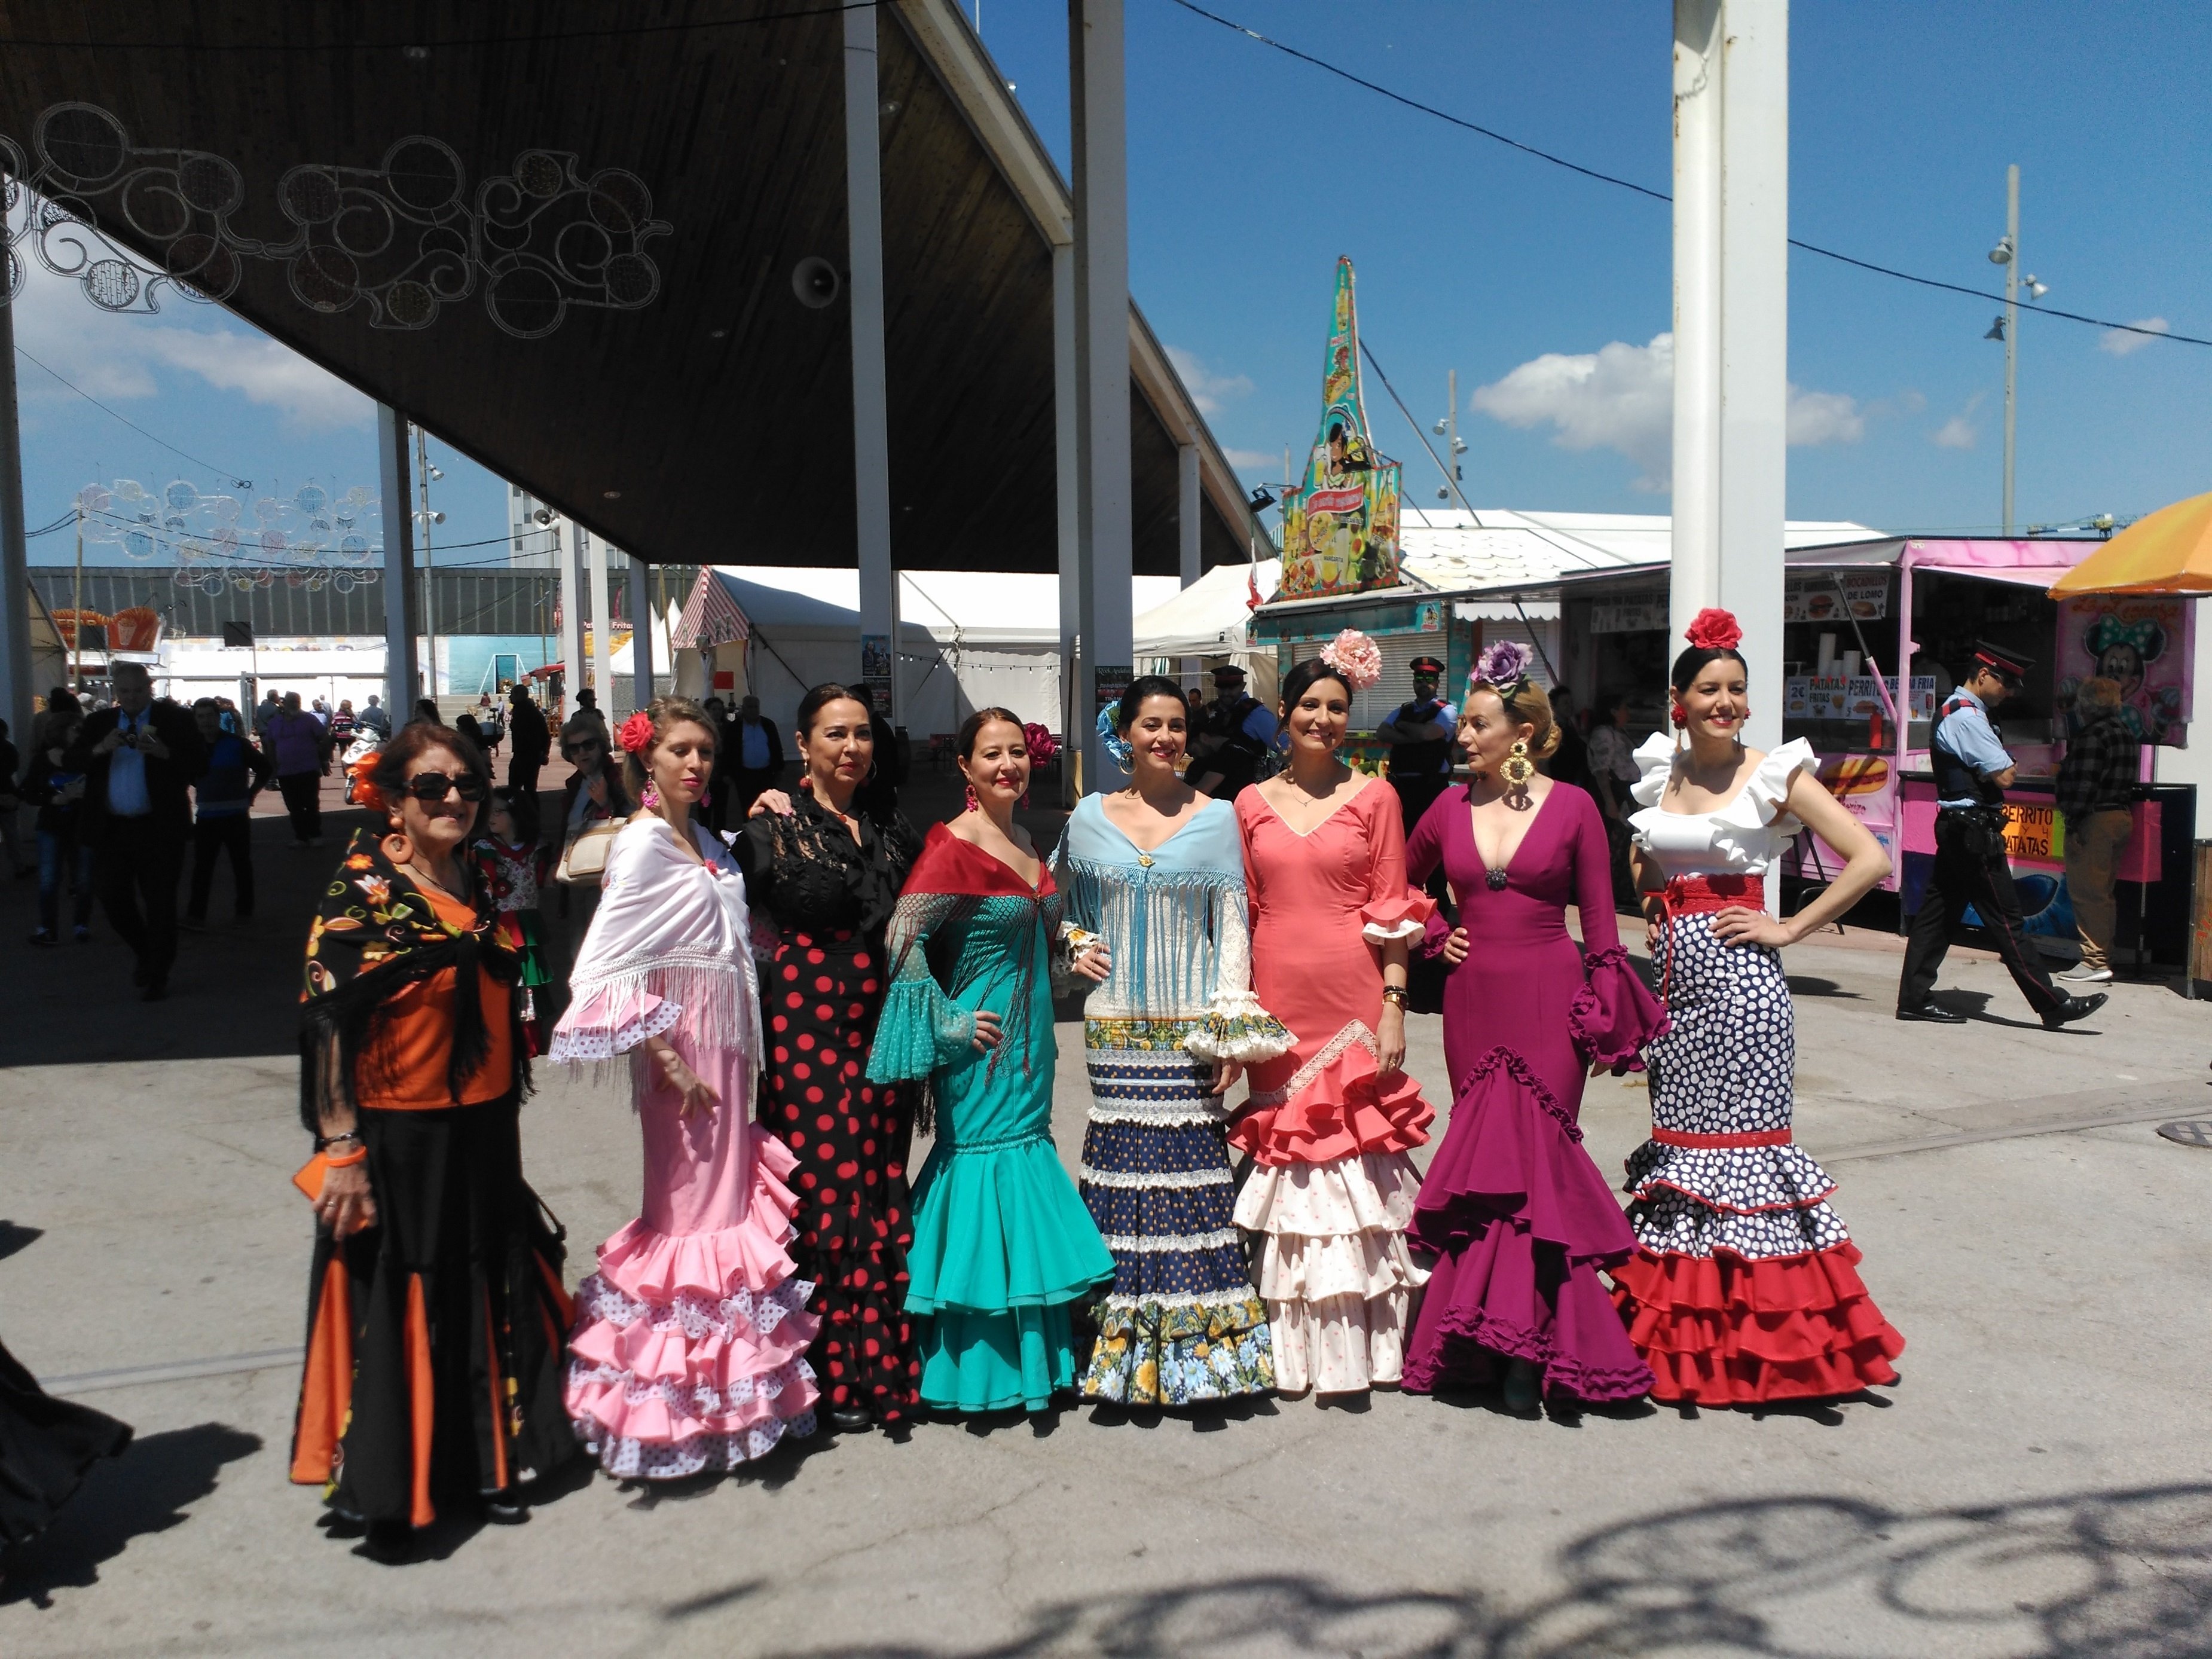 La Feria de Abril de Barcelona s'ajorna fins al setembre pel coronavirus